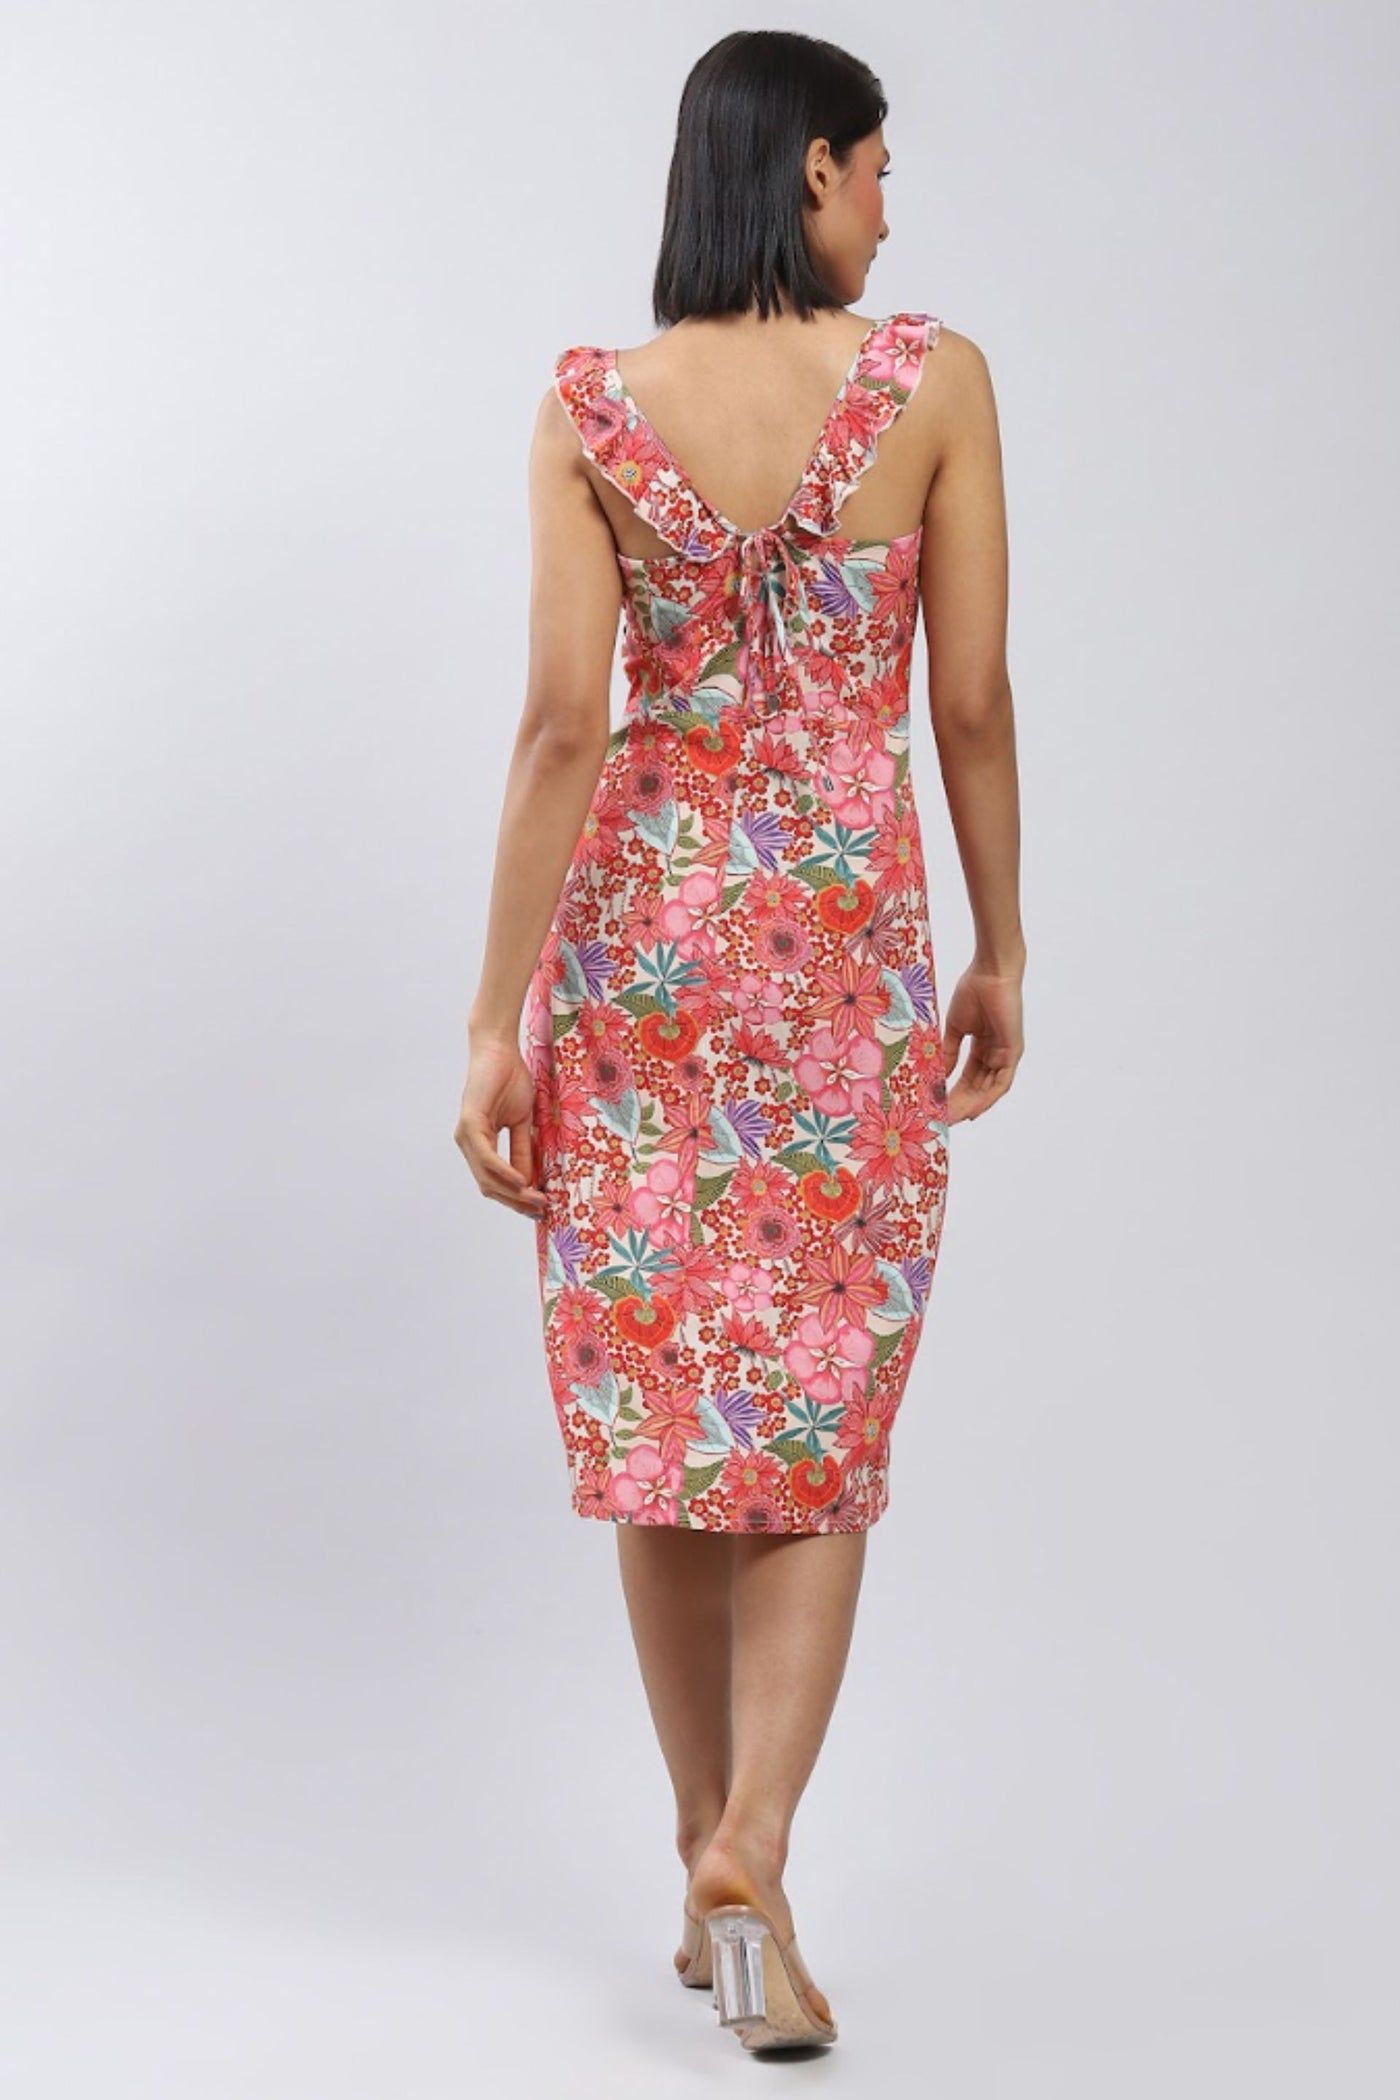 Label Ritu Kumar Pink Floral Print Midi Dress with Side Slits Indian designer wear online shopping melange singapore